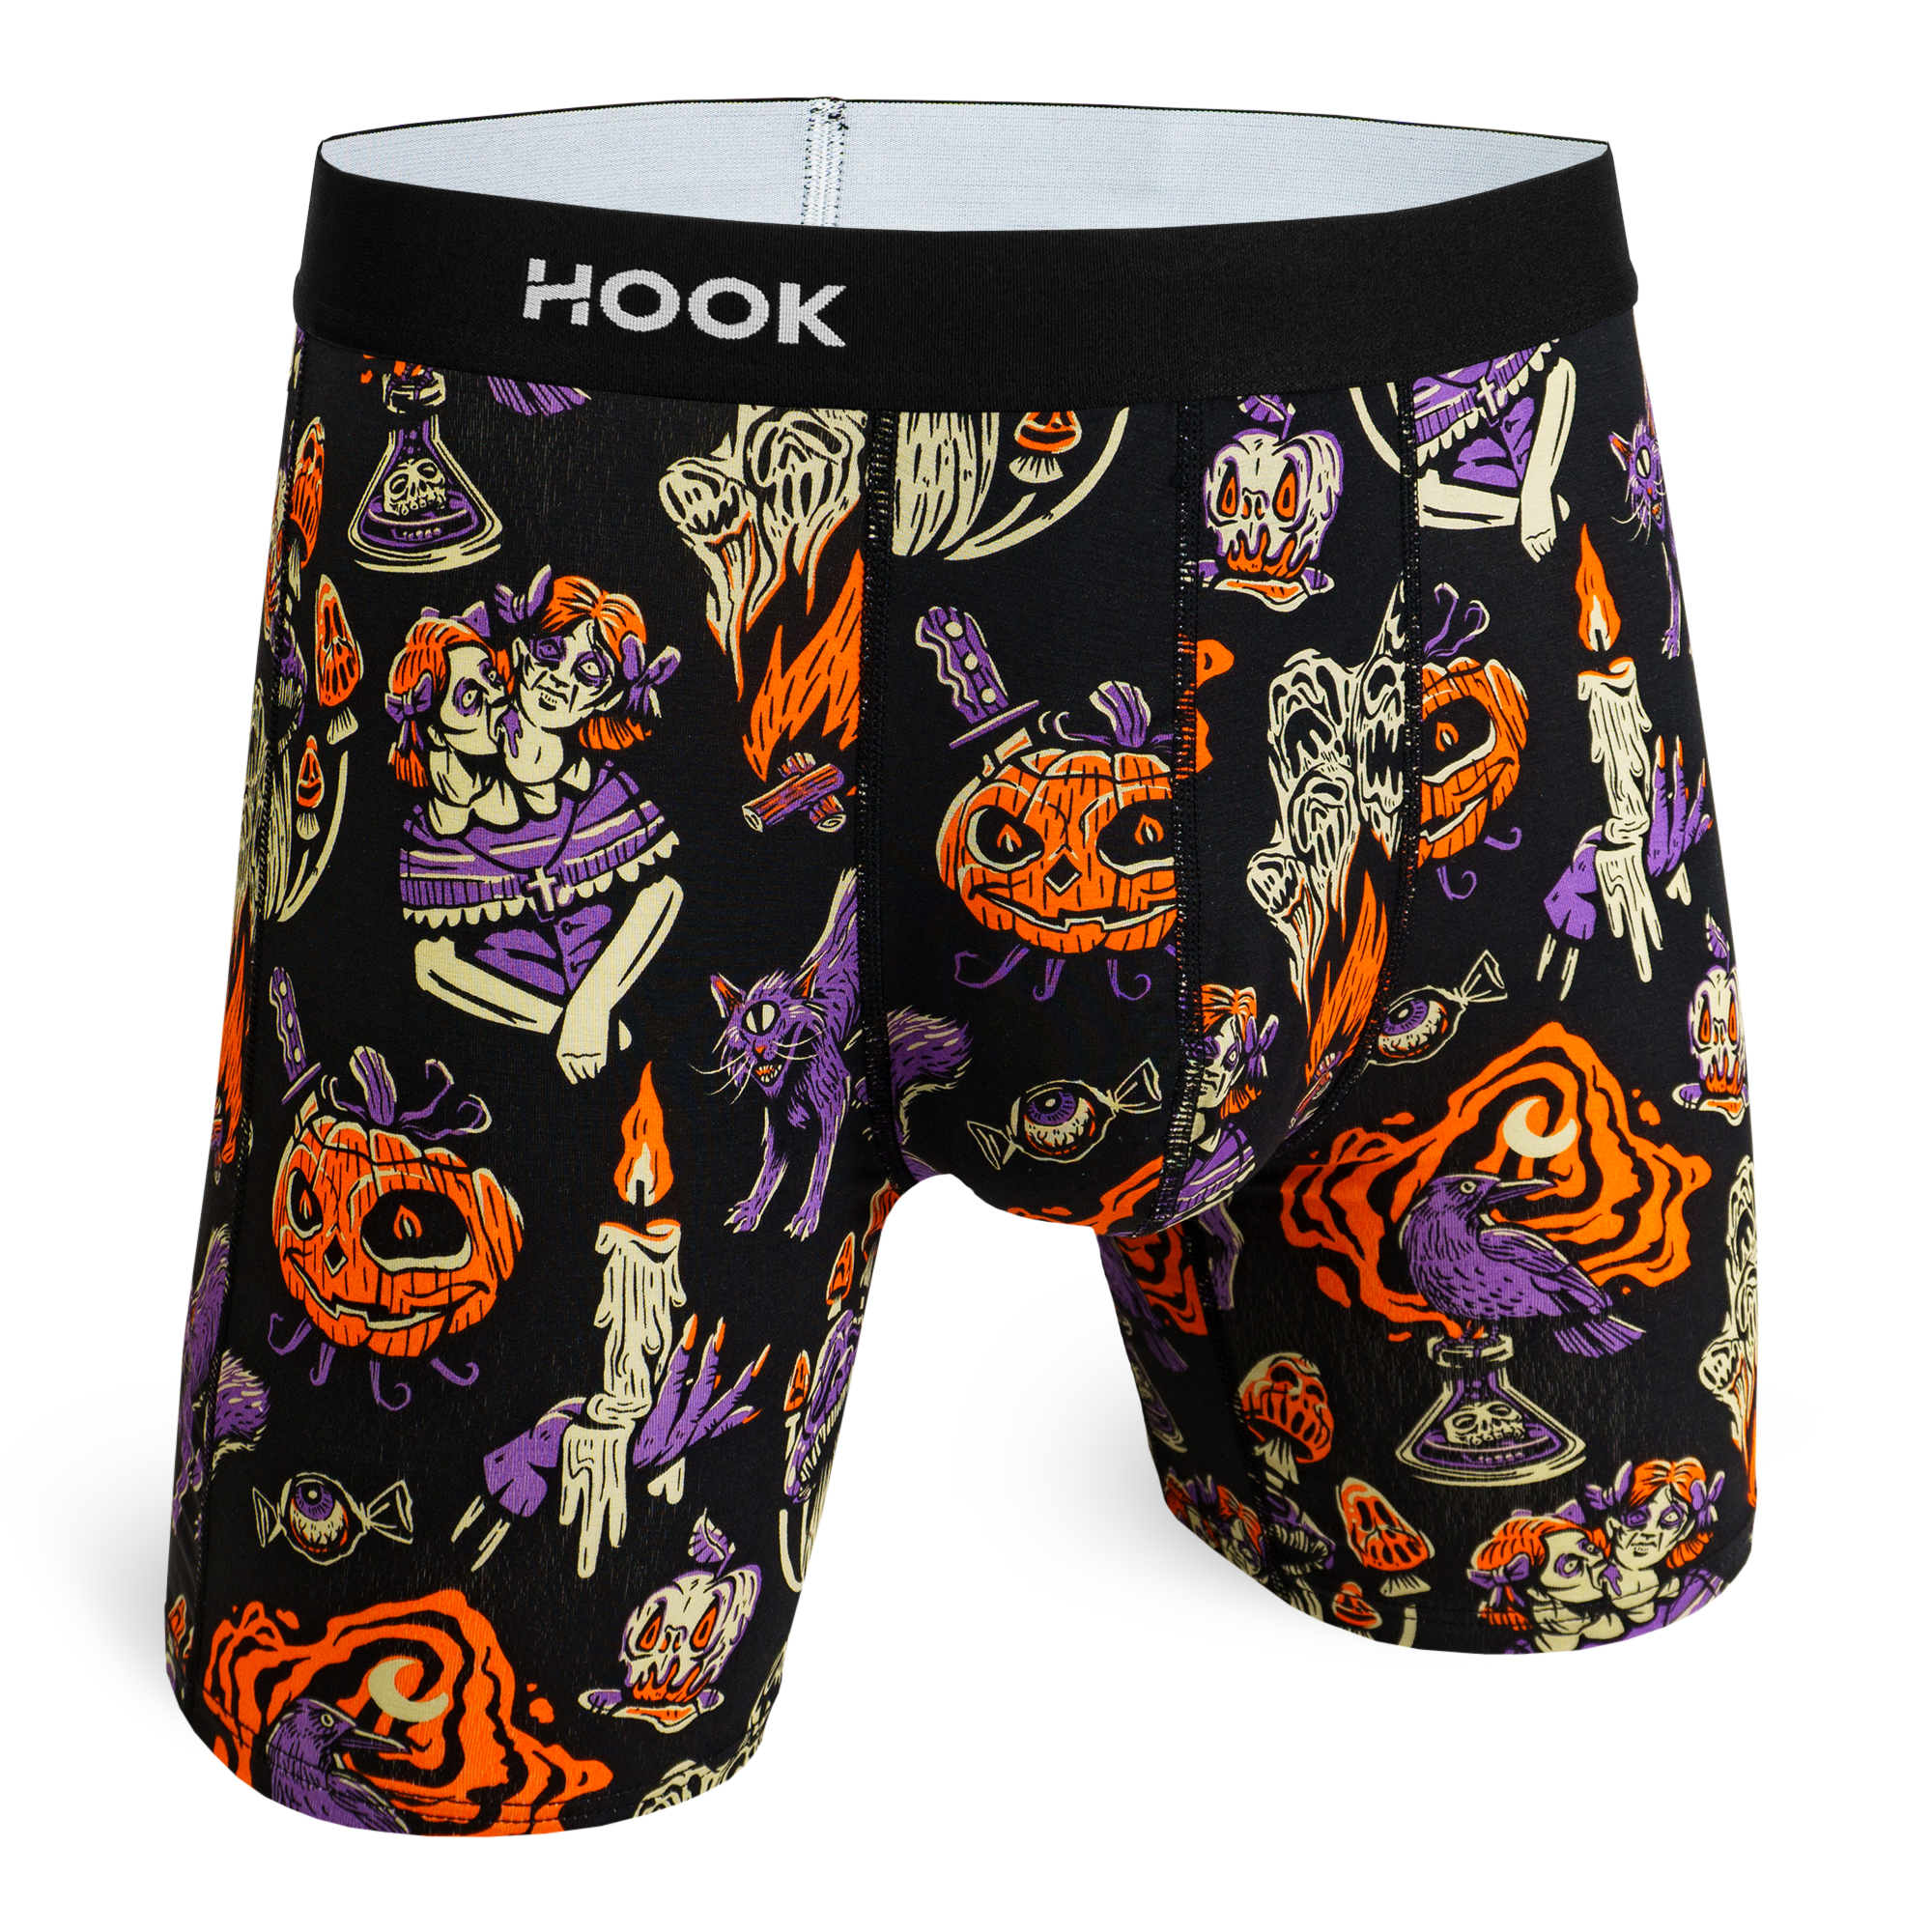 Halloween Pack : 2 Boxers Brief, 2 socks